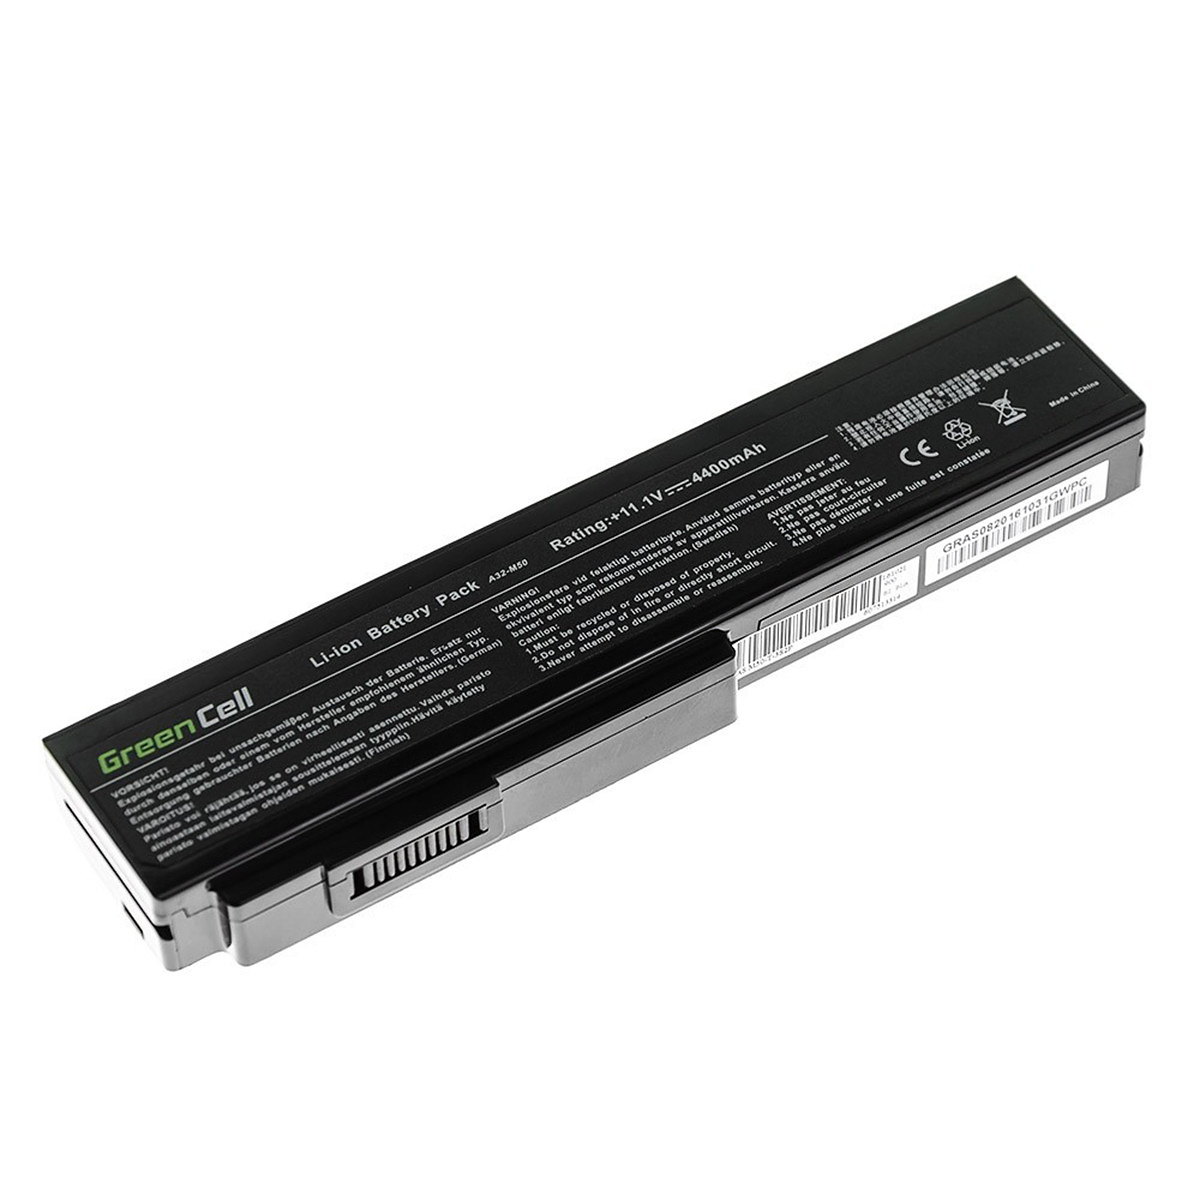 Green Cell Batteri för Asus A32-M50 A32-N61, 10.8V(11.1V), 4400mAh 